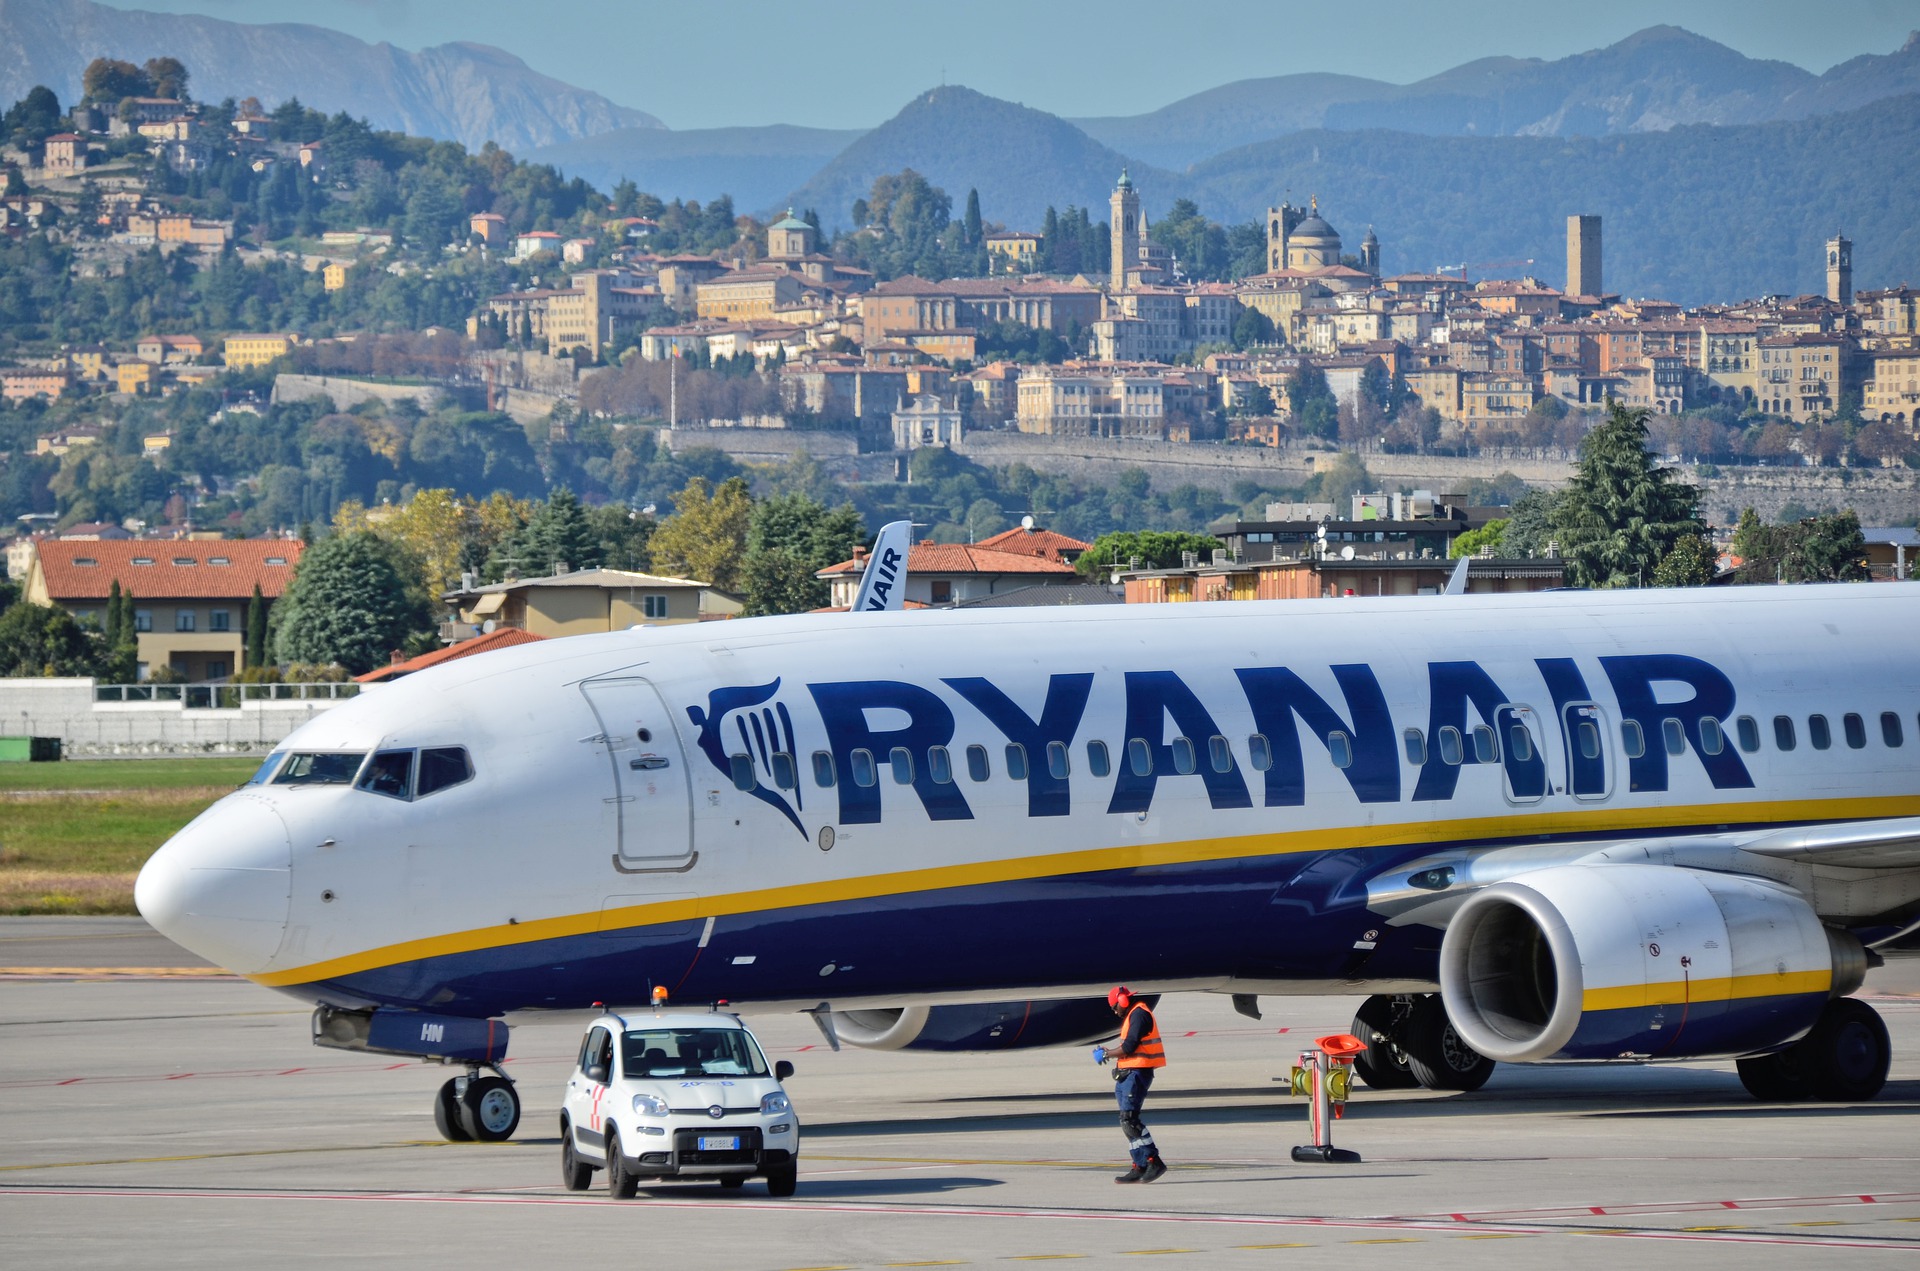 Ryanair a raportat pierderi, dar se așteaptă la scumpirea biletelor de avion din această vară